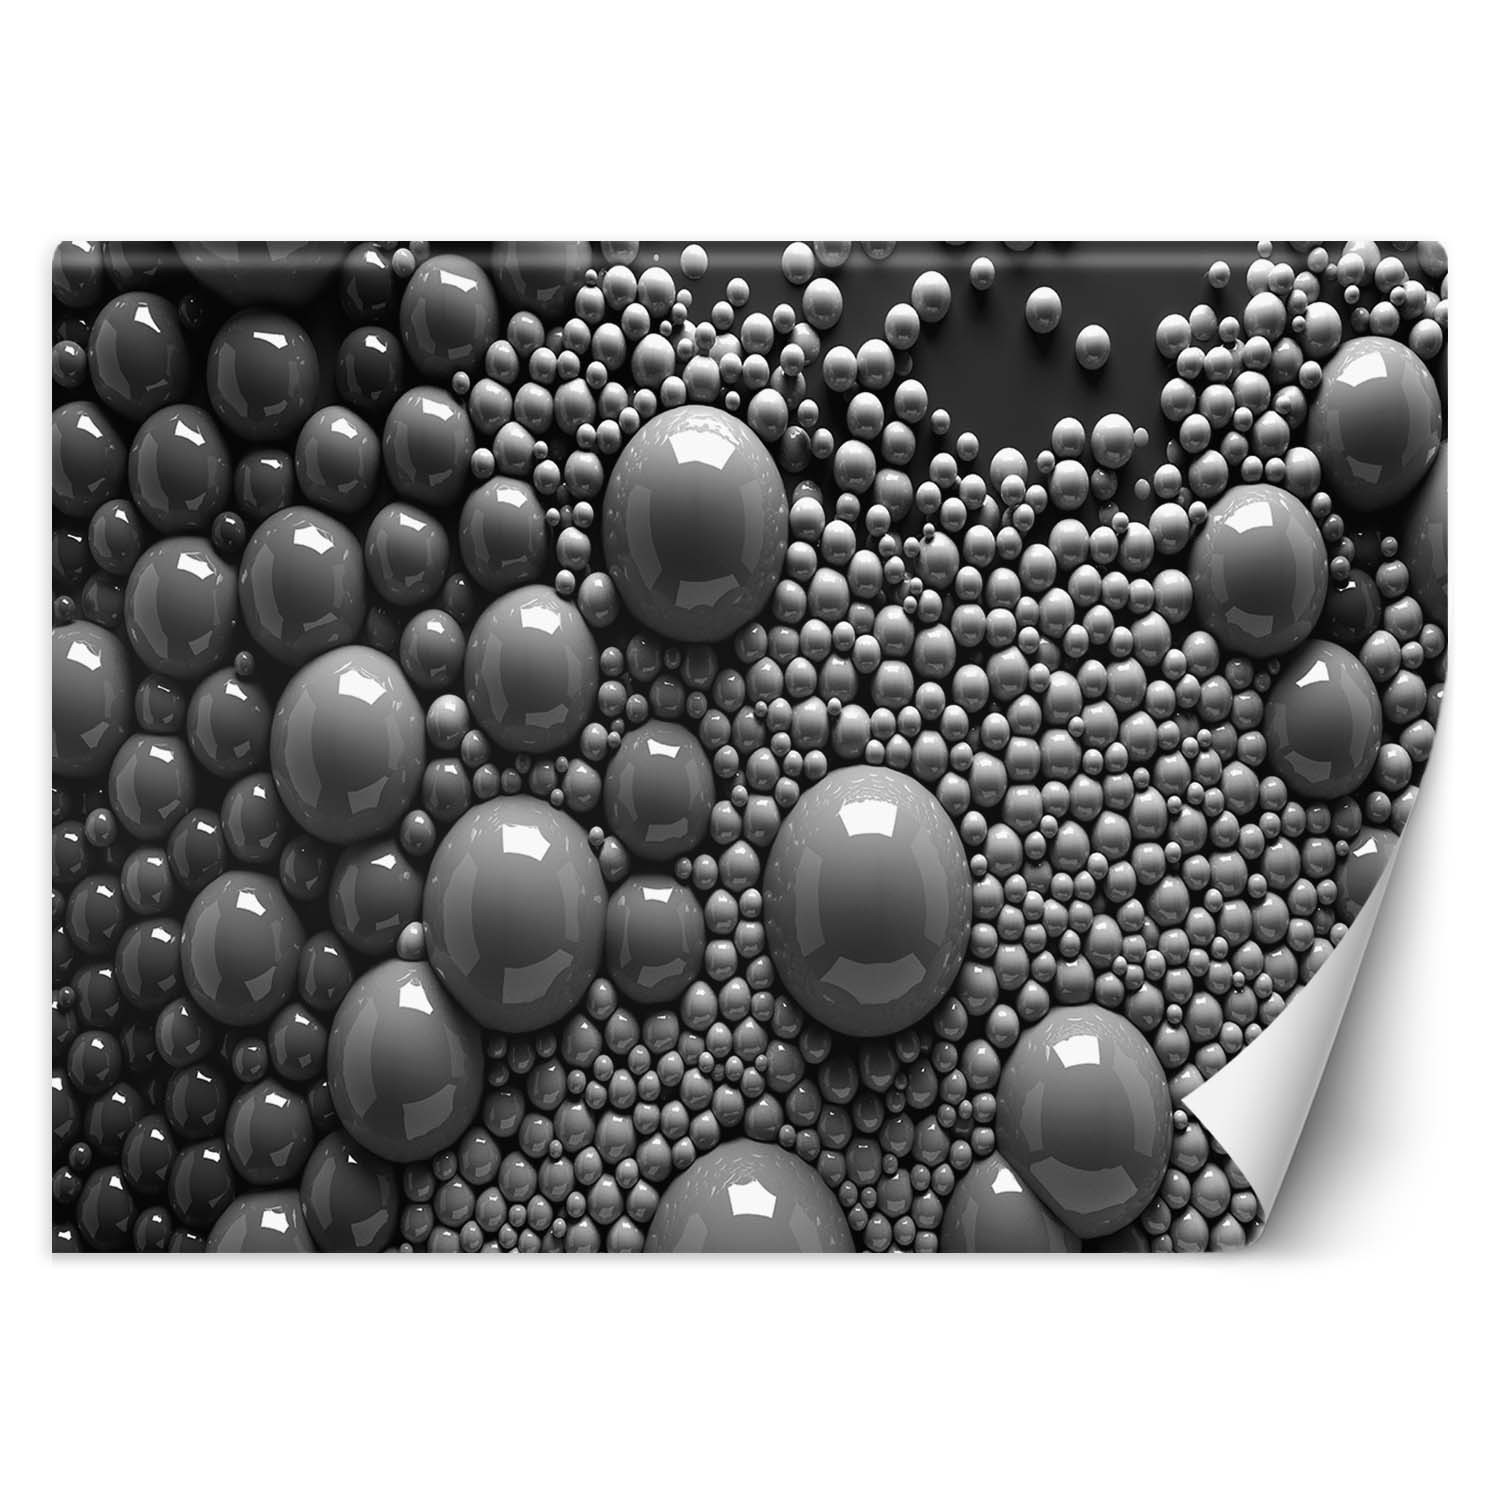 Trend24 – Behang – Abstracte Ballen 3D – Behangpapier – Fotobehang 3D – Behang Woonkamer – 400x280x2 cm – Incl. behanglijm